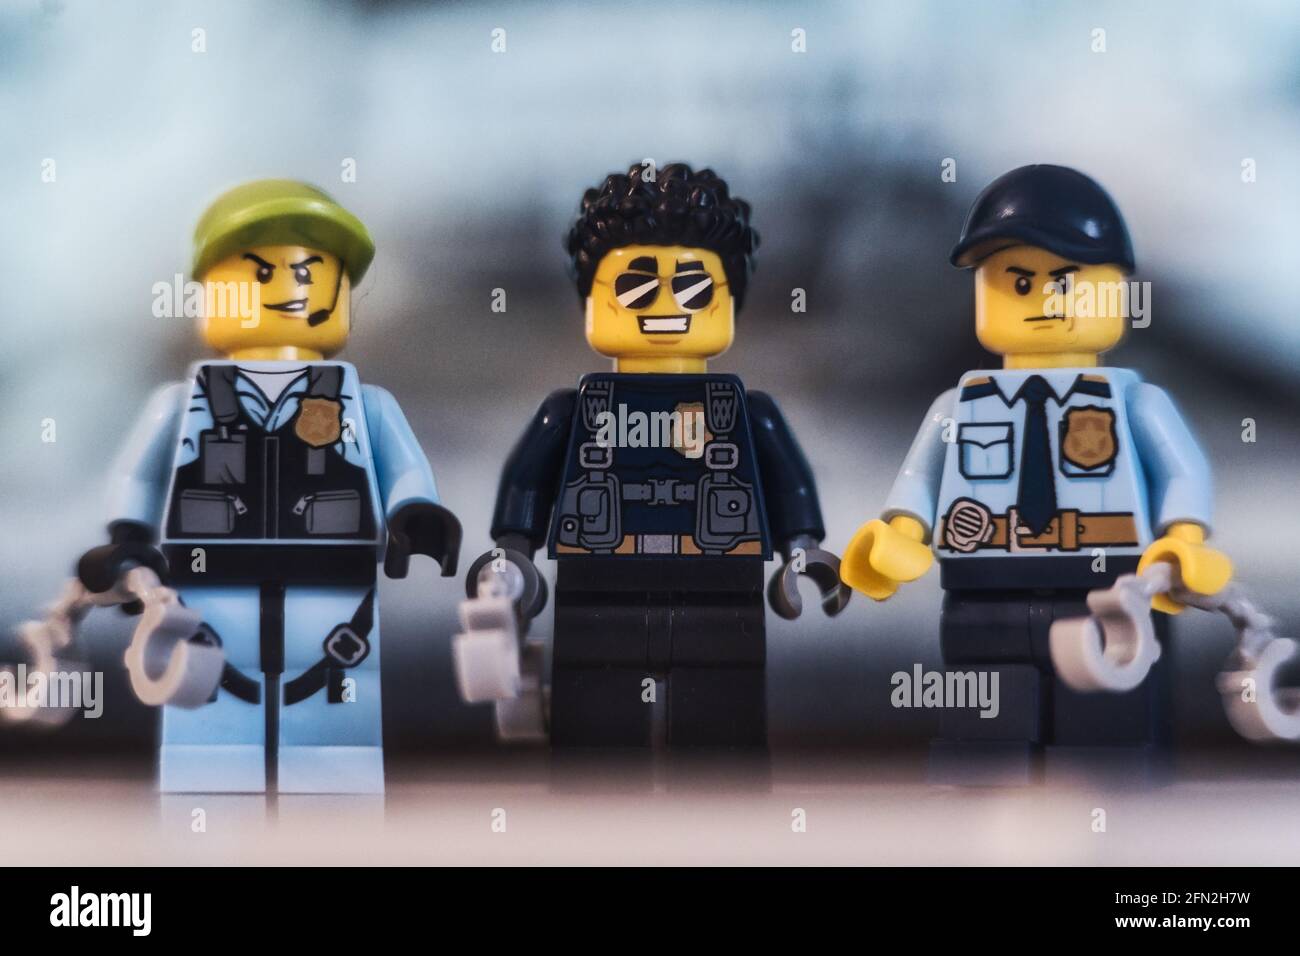 MÜNCHEN, 12. Mai 2021: LEGO-Figuren von Polizisten, die in einer Gruppe  zusammenstehen. Konzept für Polizeibeamte und Strafverfolgungsbehörden  Stockfotografie - Alamy